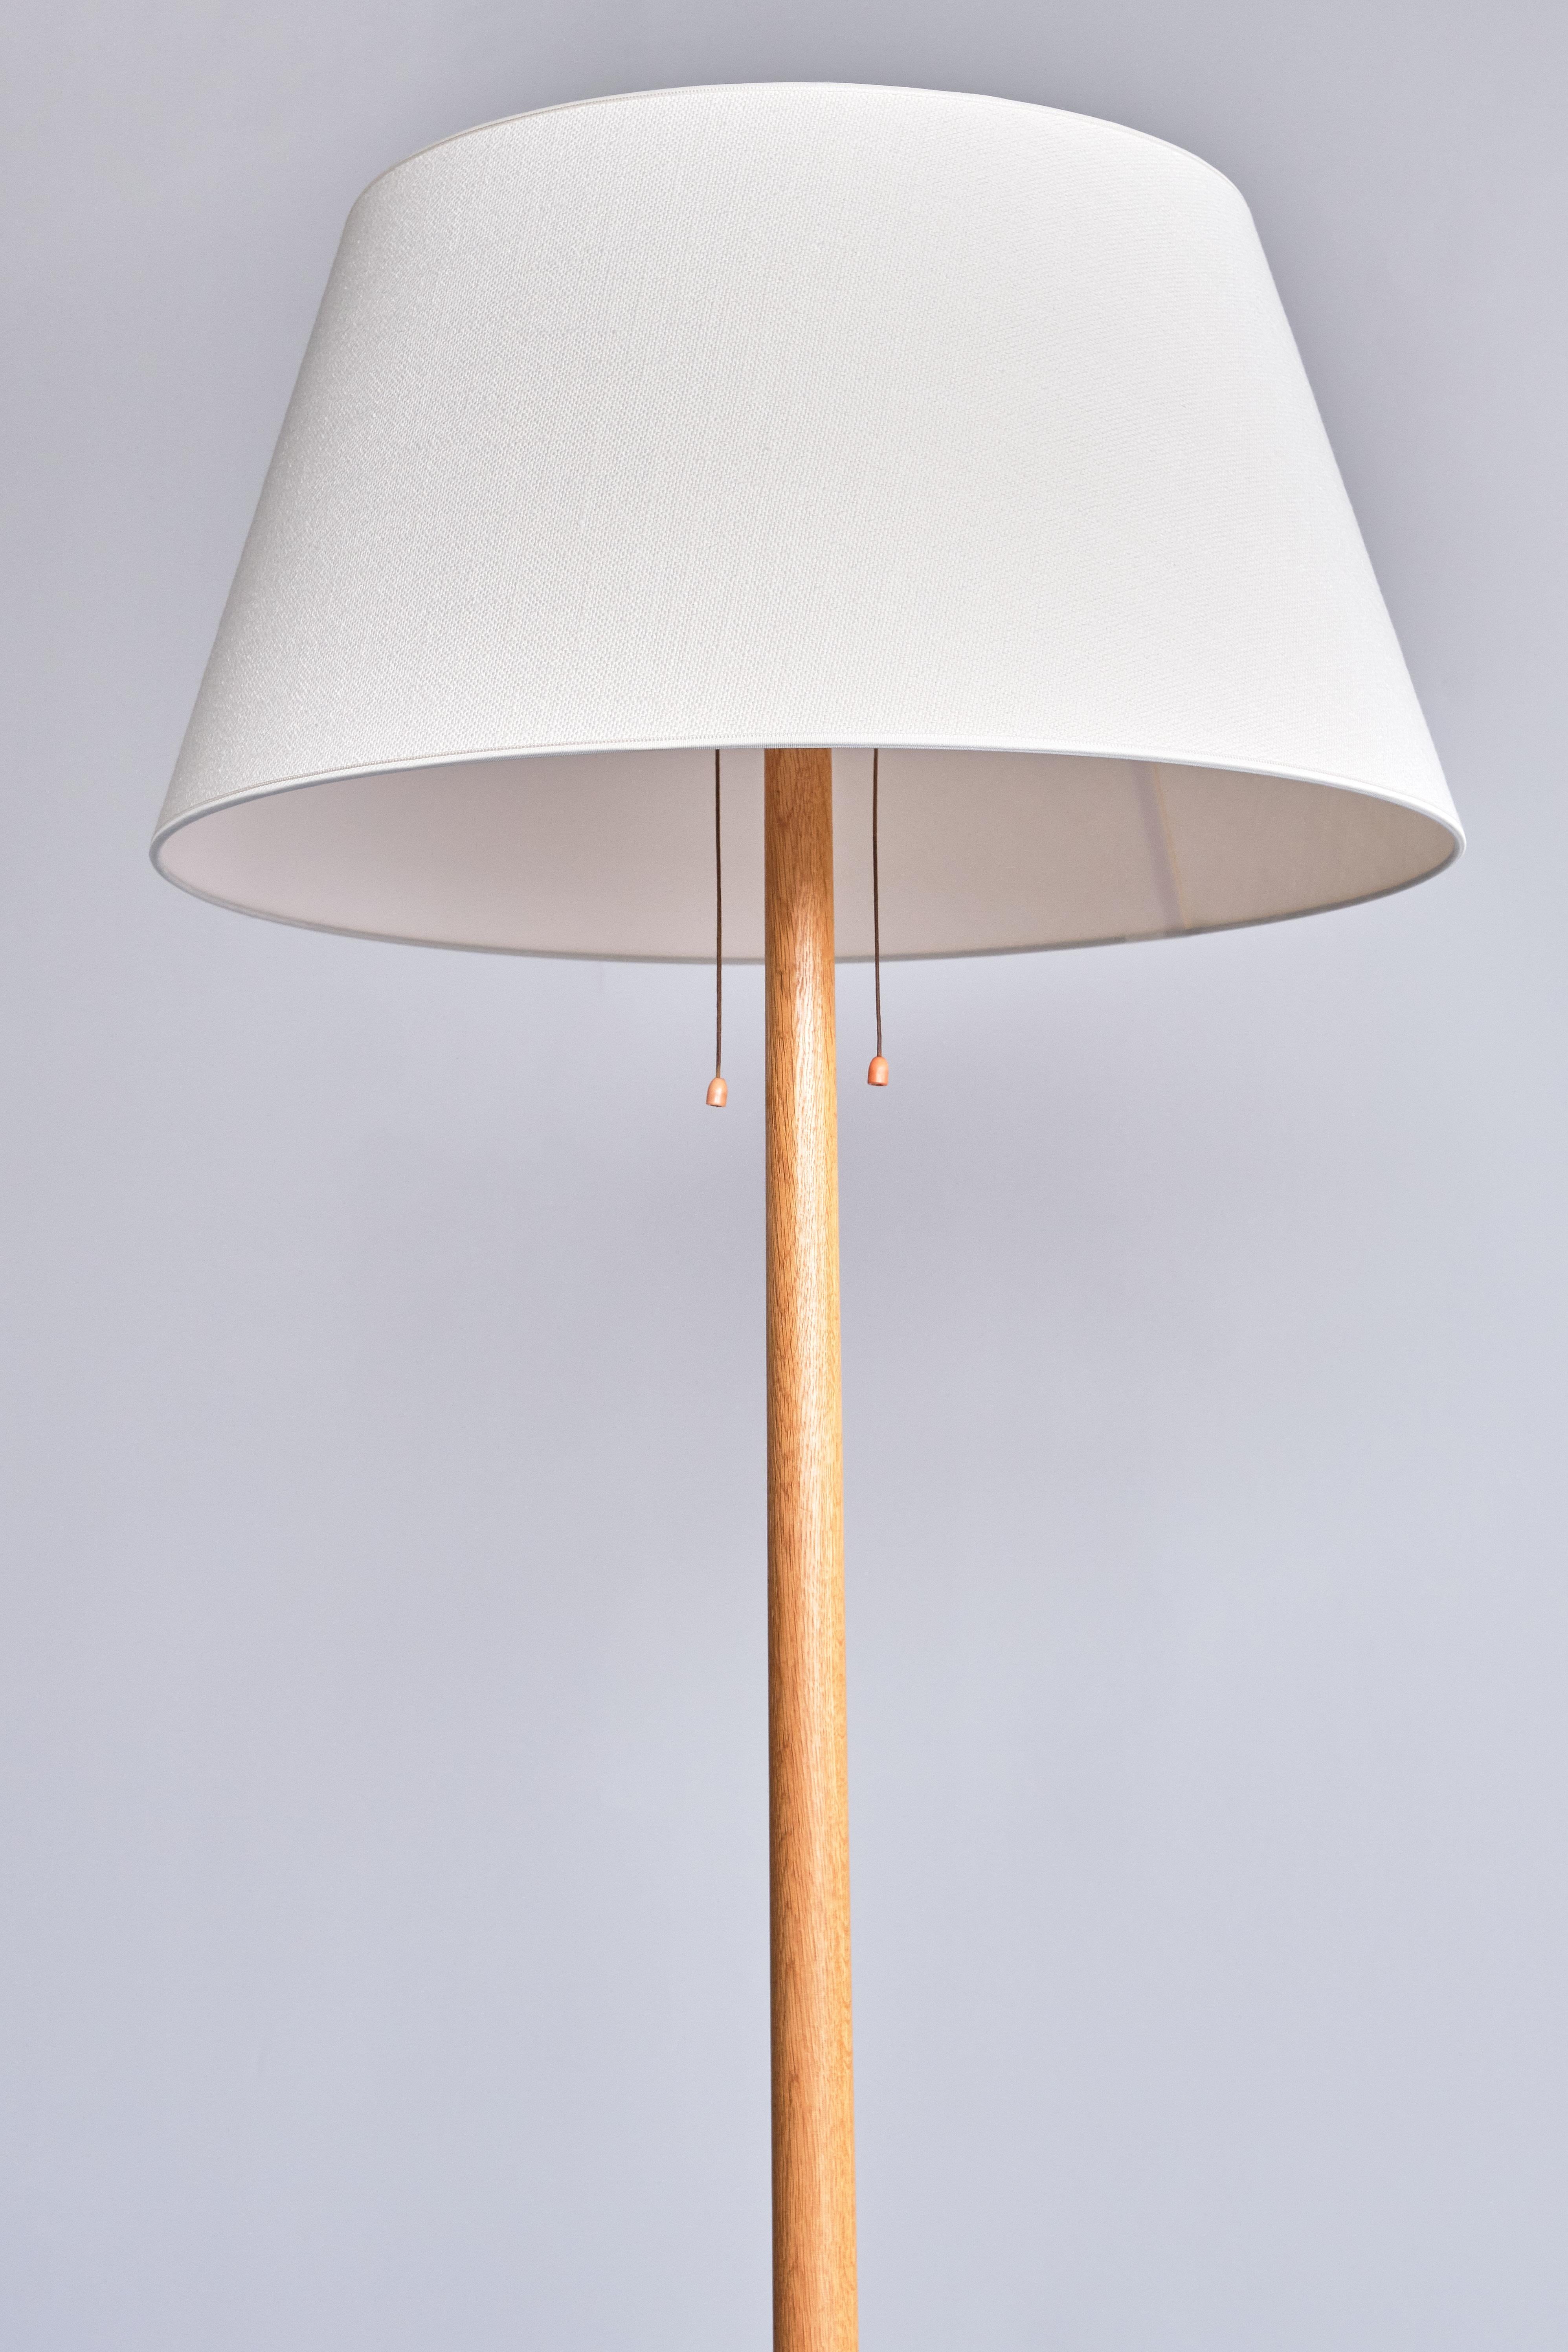 Swedish Modern Three Legged Floor Lamp in Oak, Svensk Hemslöjd, 1950s For Sale 4